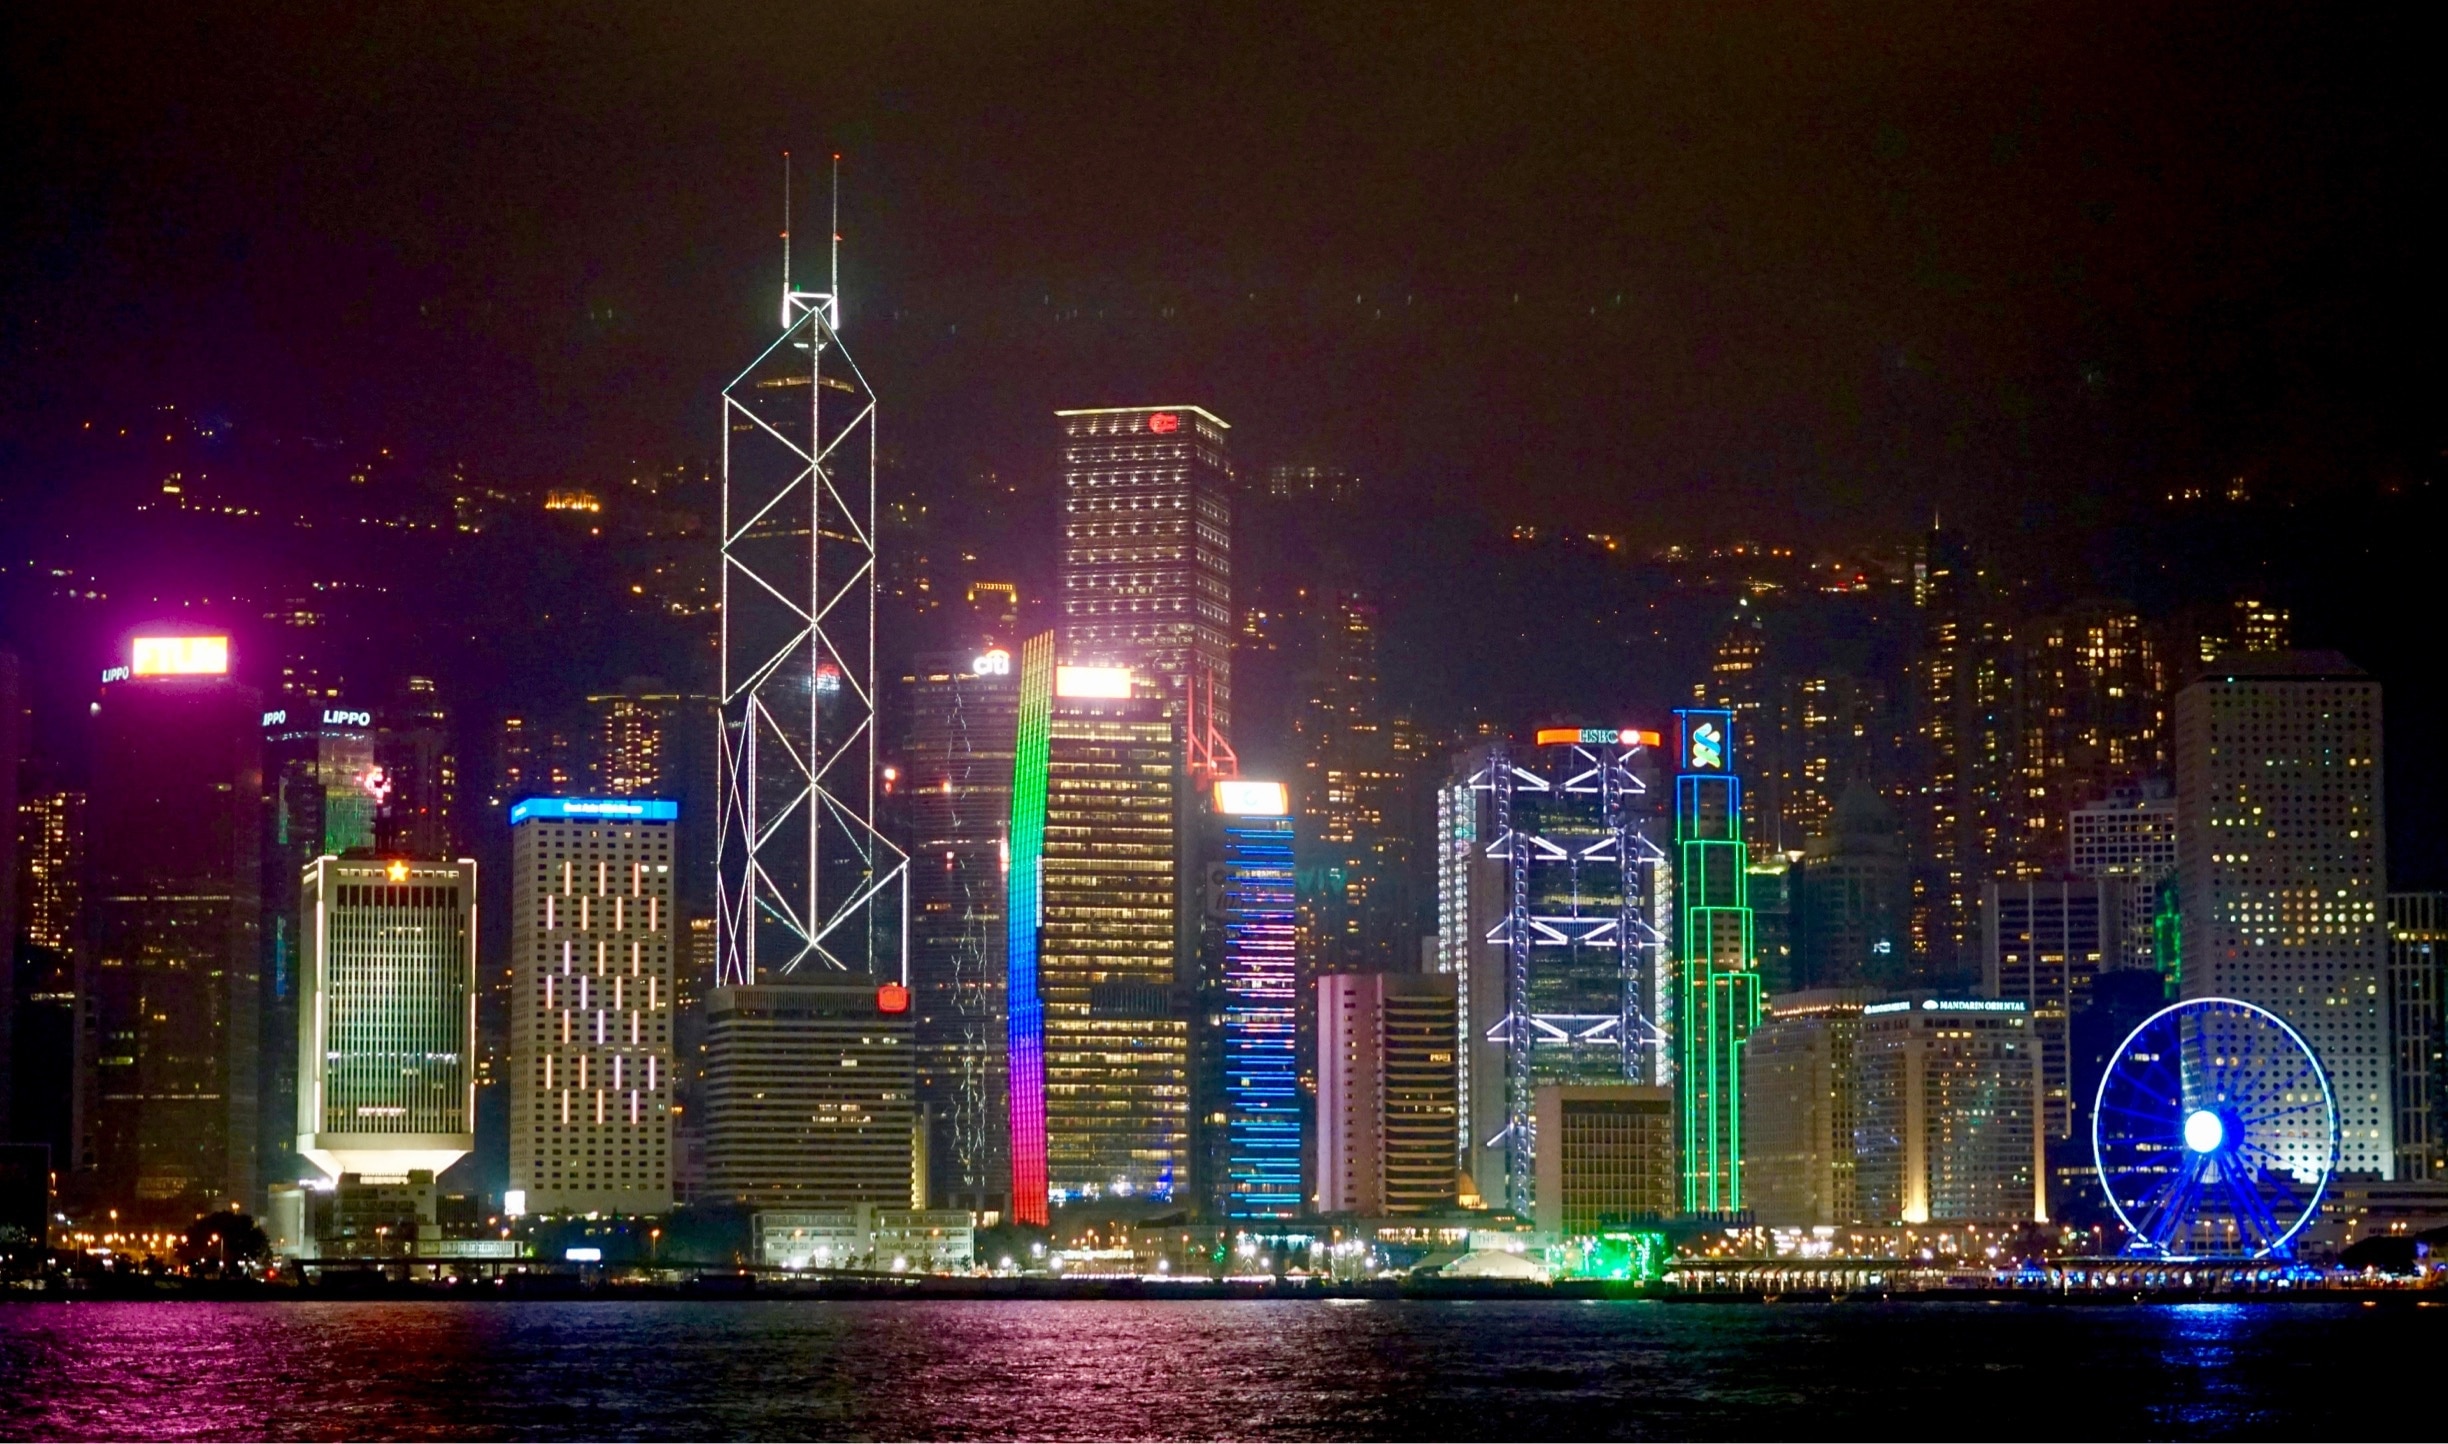 China Hong Kong City Tower 5, 33 Canton Road